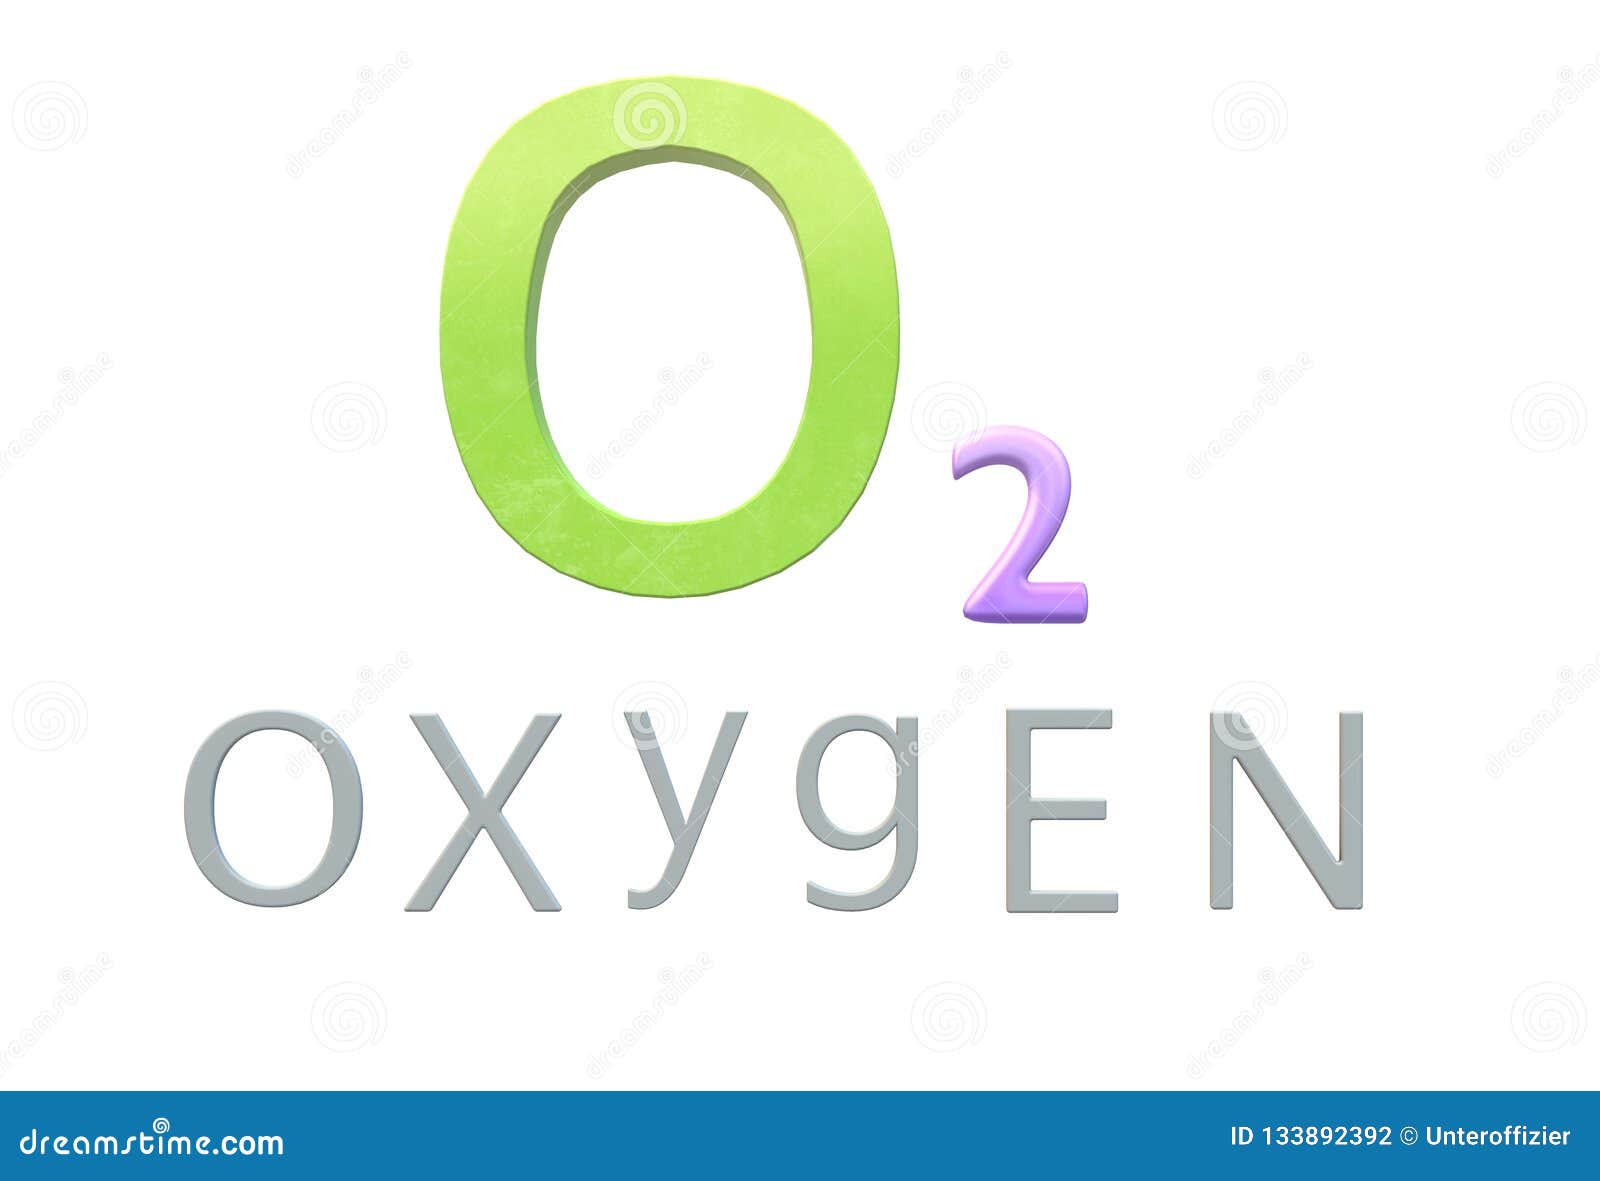 Символ элемента кислород. Кислород. Химический знак кислорода. Кислород химический элемент. Кислород фото химический элемент.